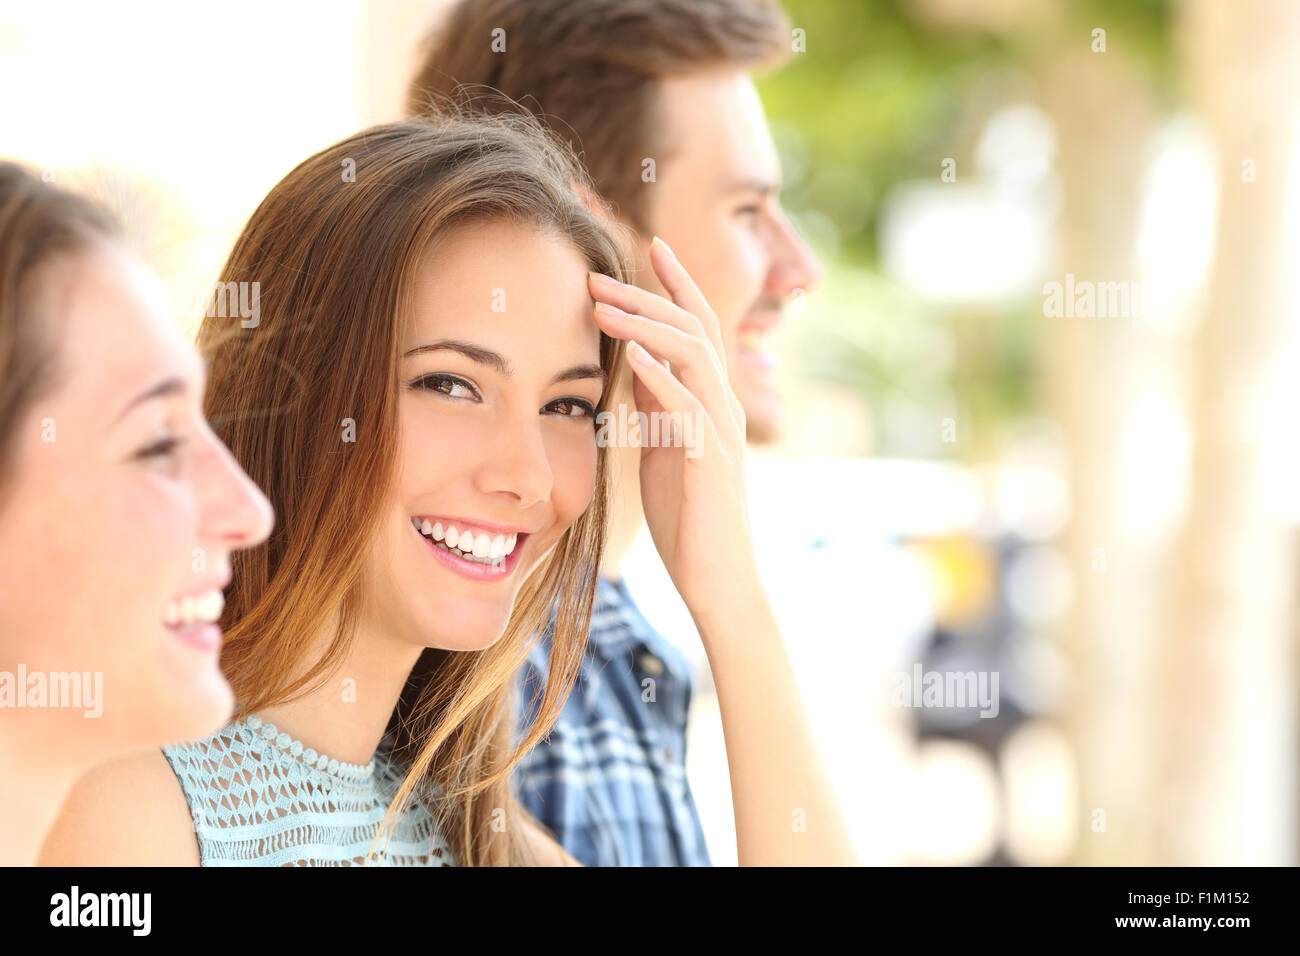 La bellezza della donna con sorriso bianco e denti tra amici per la strada Foto Stock